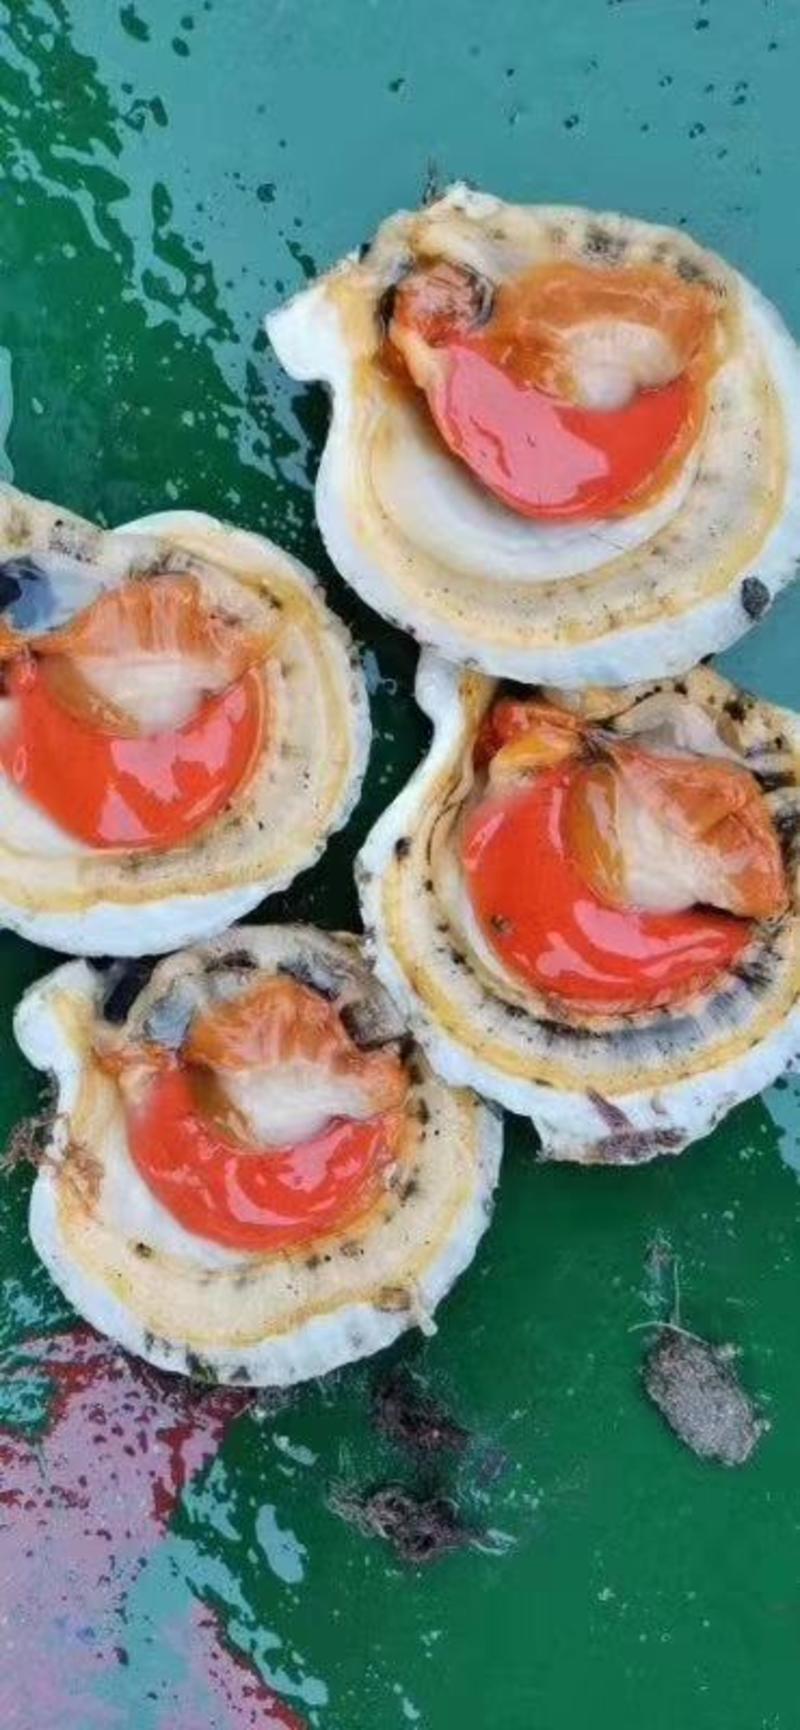 鲜活吊笼贝夏夷贝扇贝元贝贝壳类海产品批发保质保量